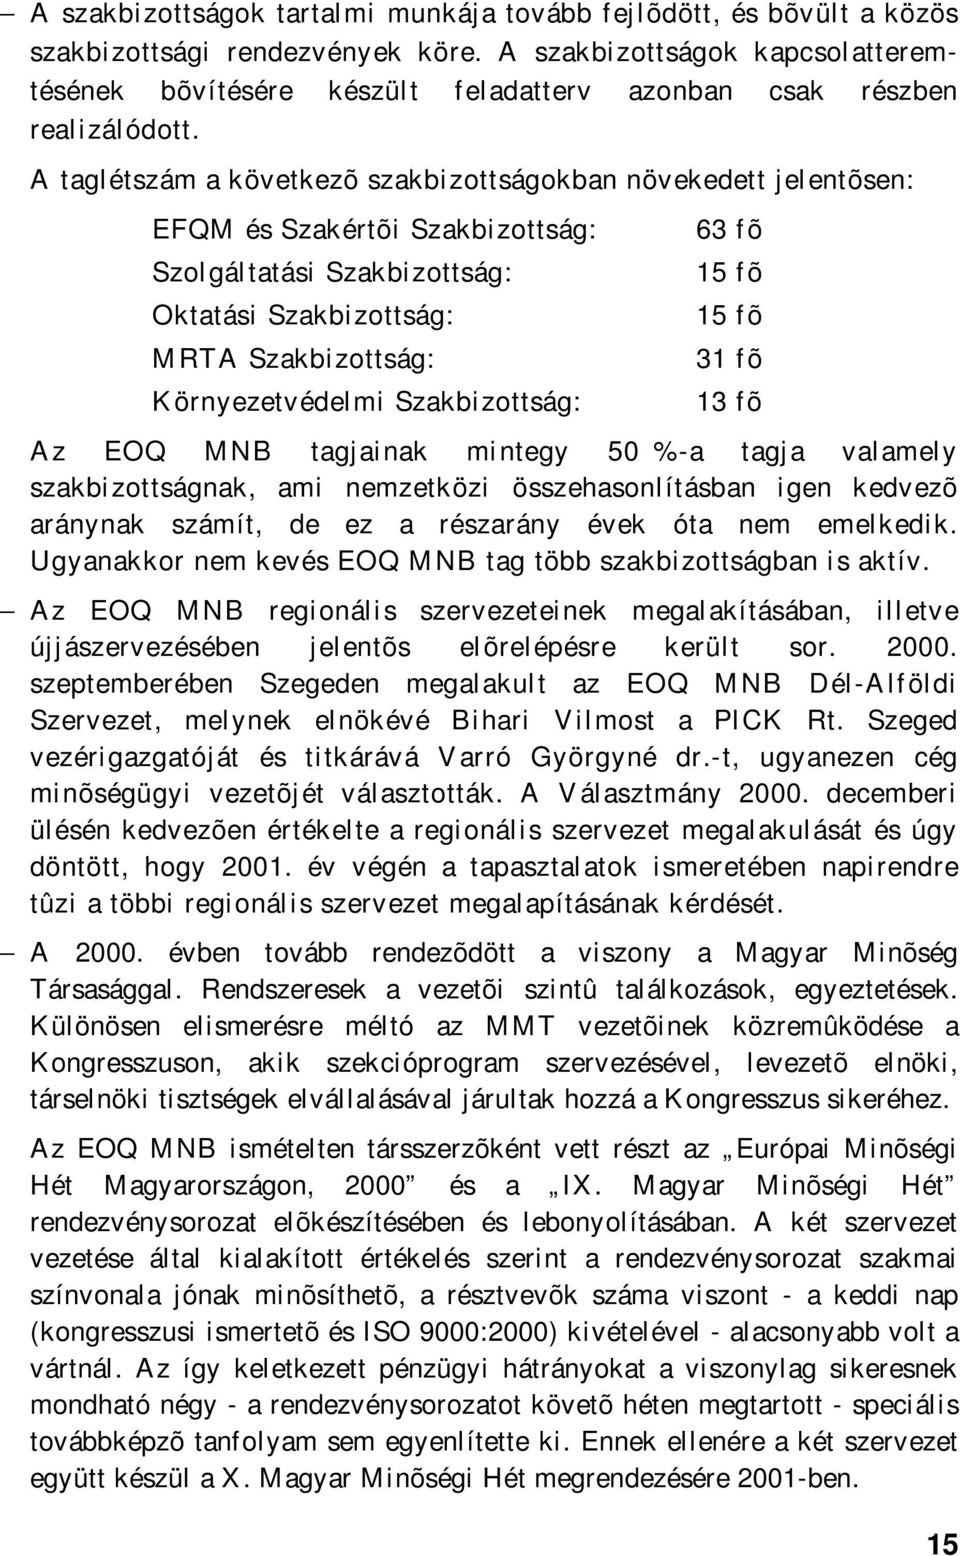 A taglétszám a következõ szakbizottságokban növekedett jelentõsen: EFQM és Szakértõi Szakbizottság: Szolgáltatási Szakbizottság: Oktatási Szakbizottság: MRTA Szakbizottság: Környezetvédelmi